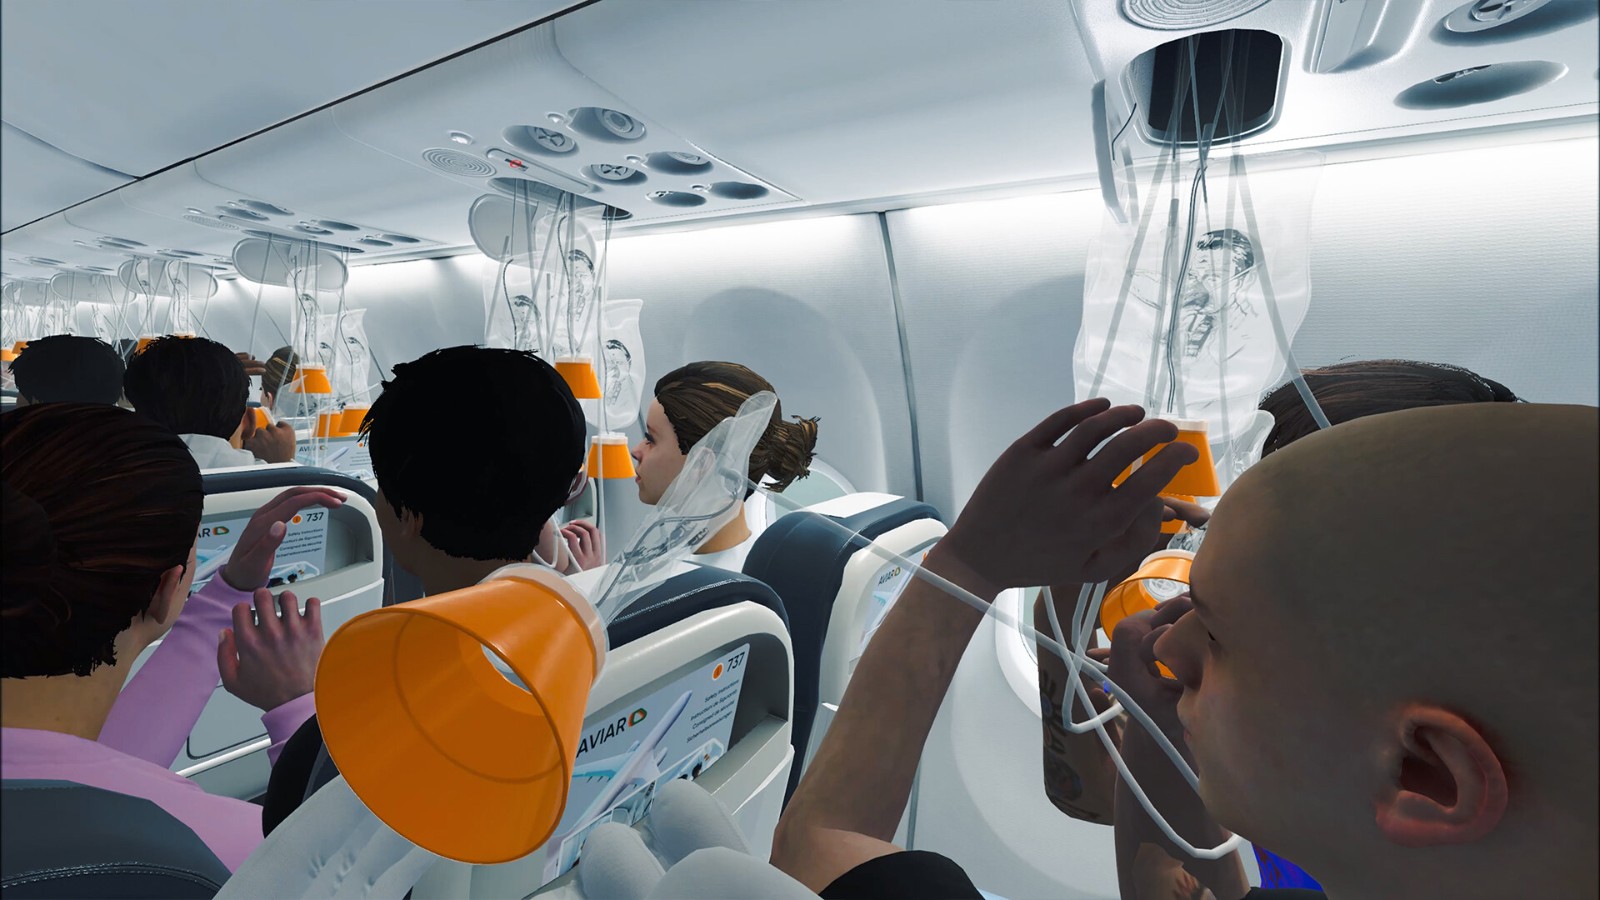 飛機事故訓練模擬《航空公司空乘模擬器VR》登陸Steam